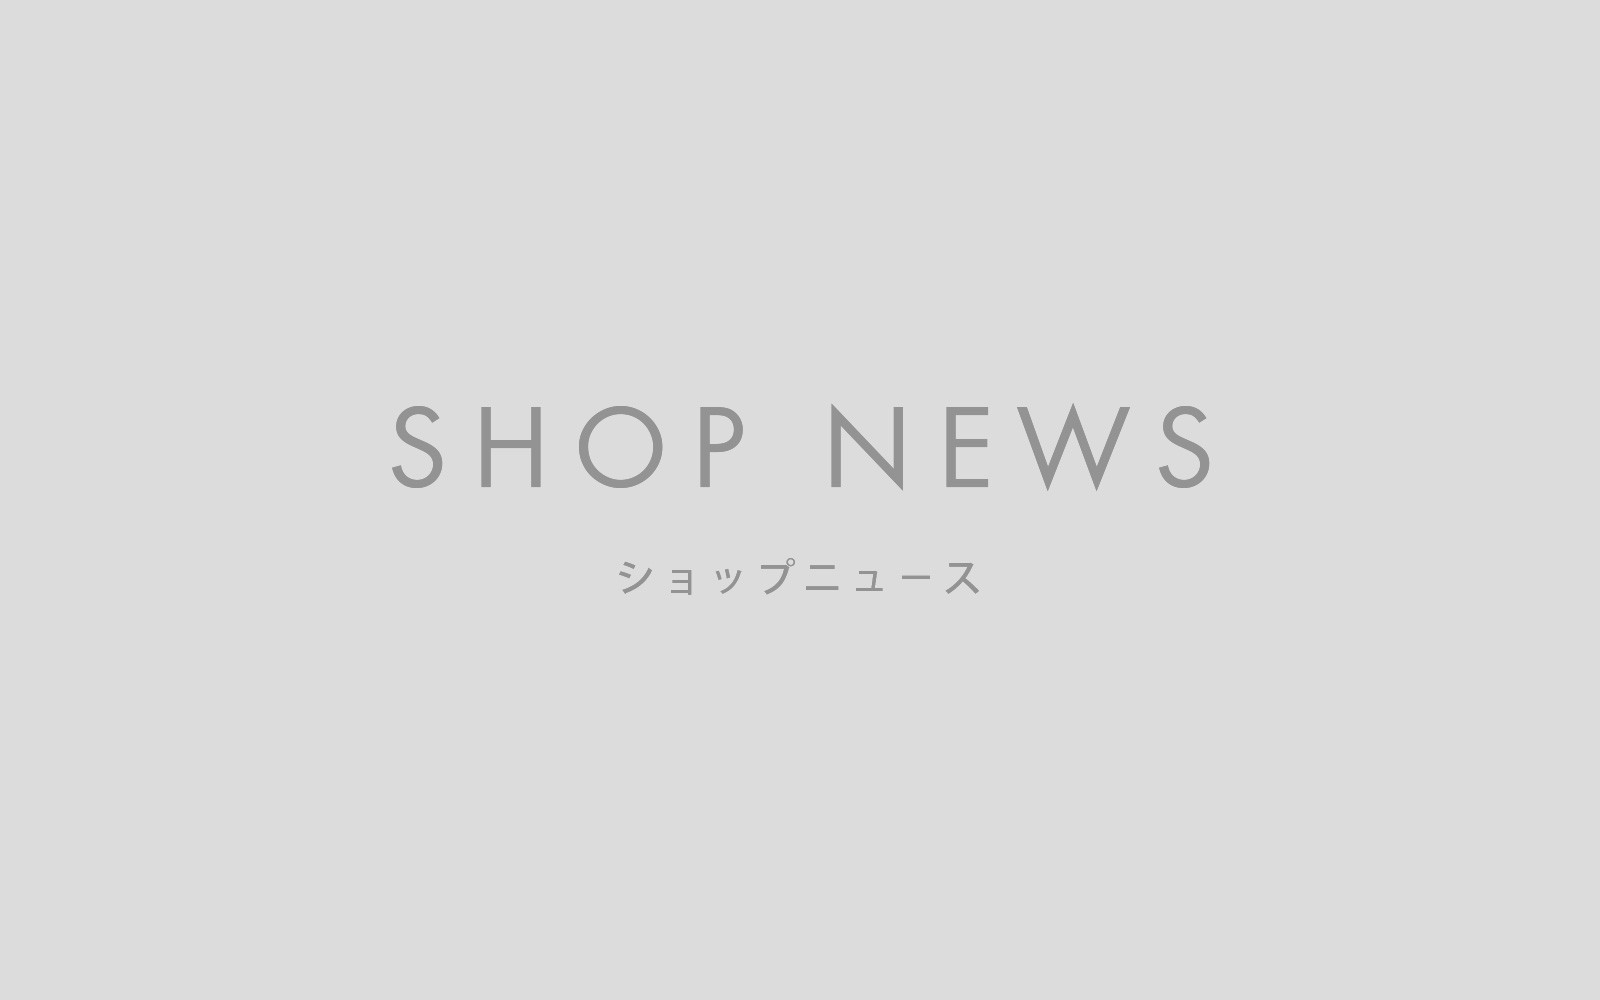 【SHOP NEWS】2021年 夏季休業のお知らせ